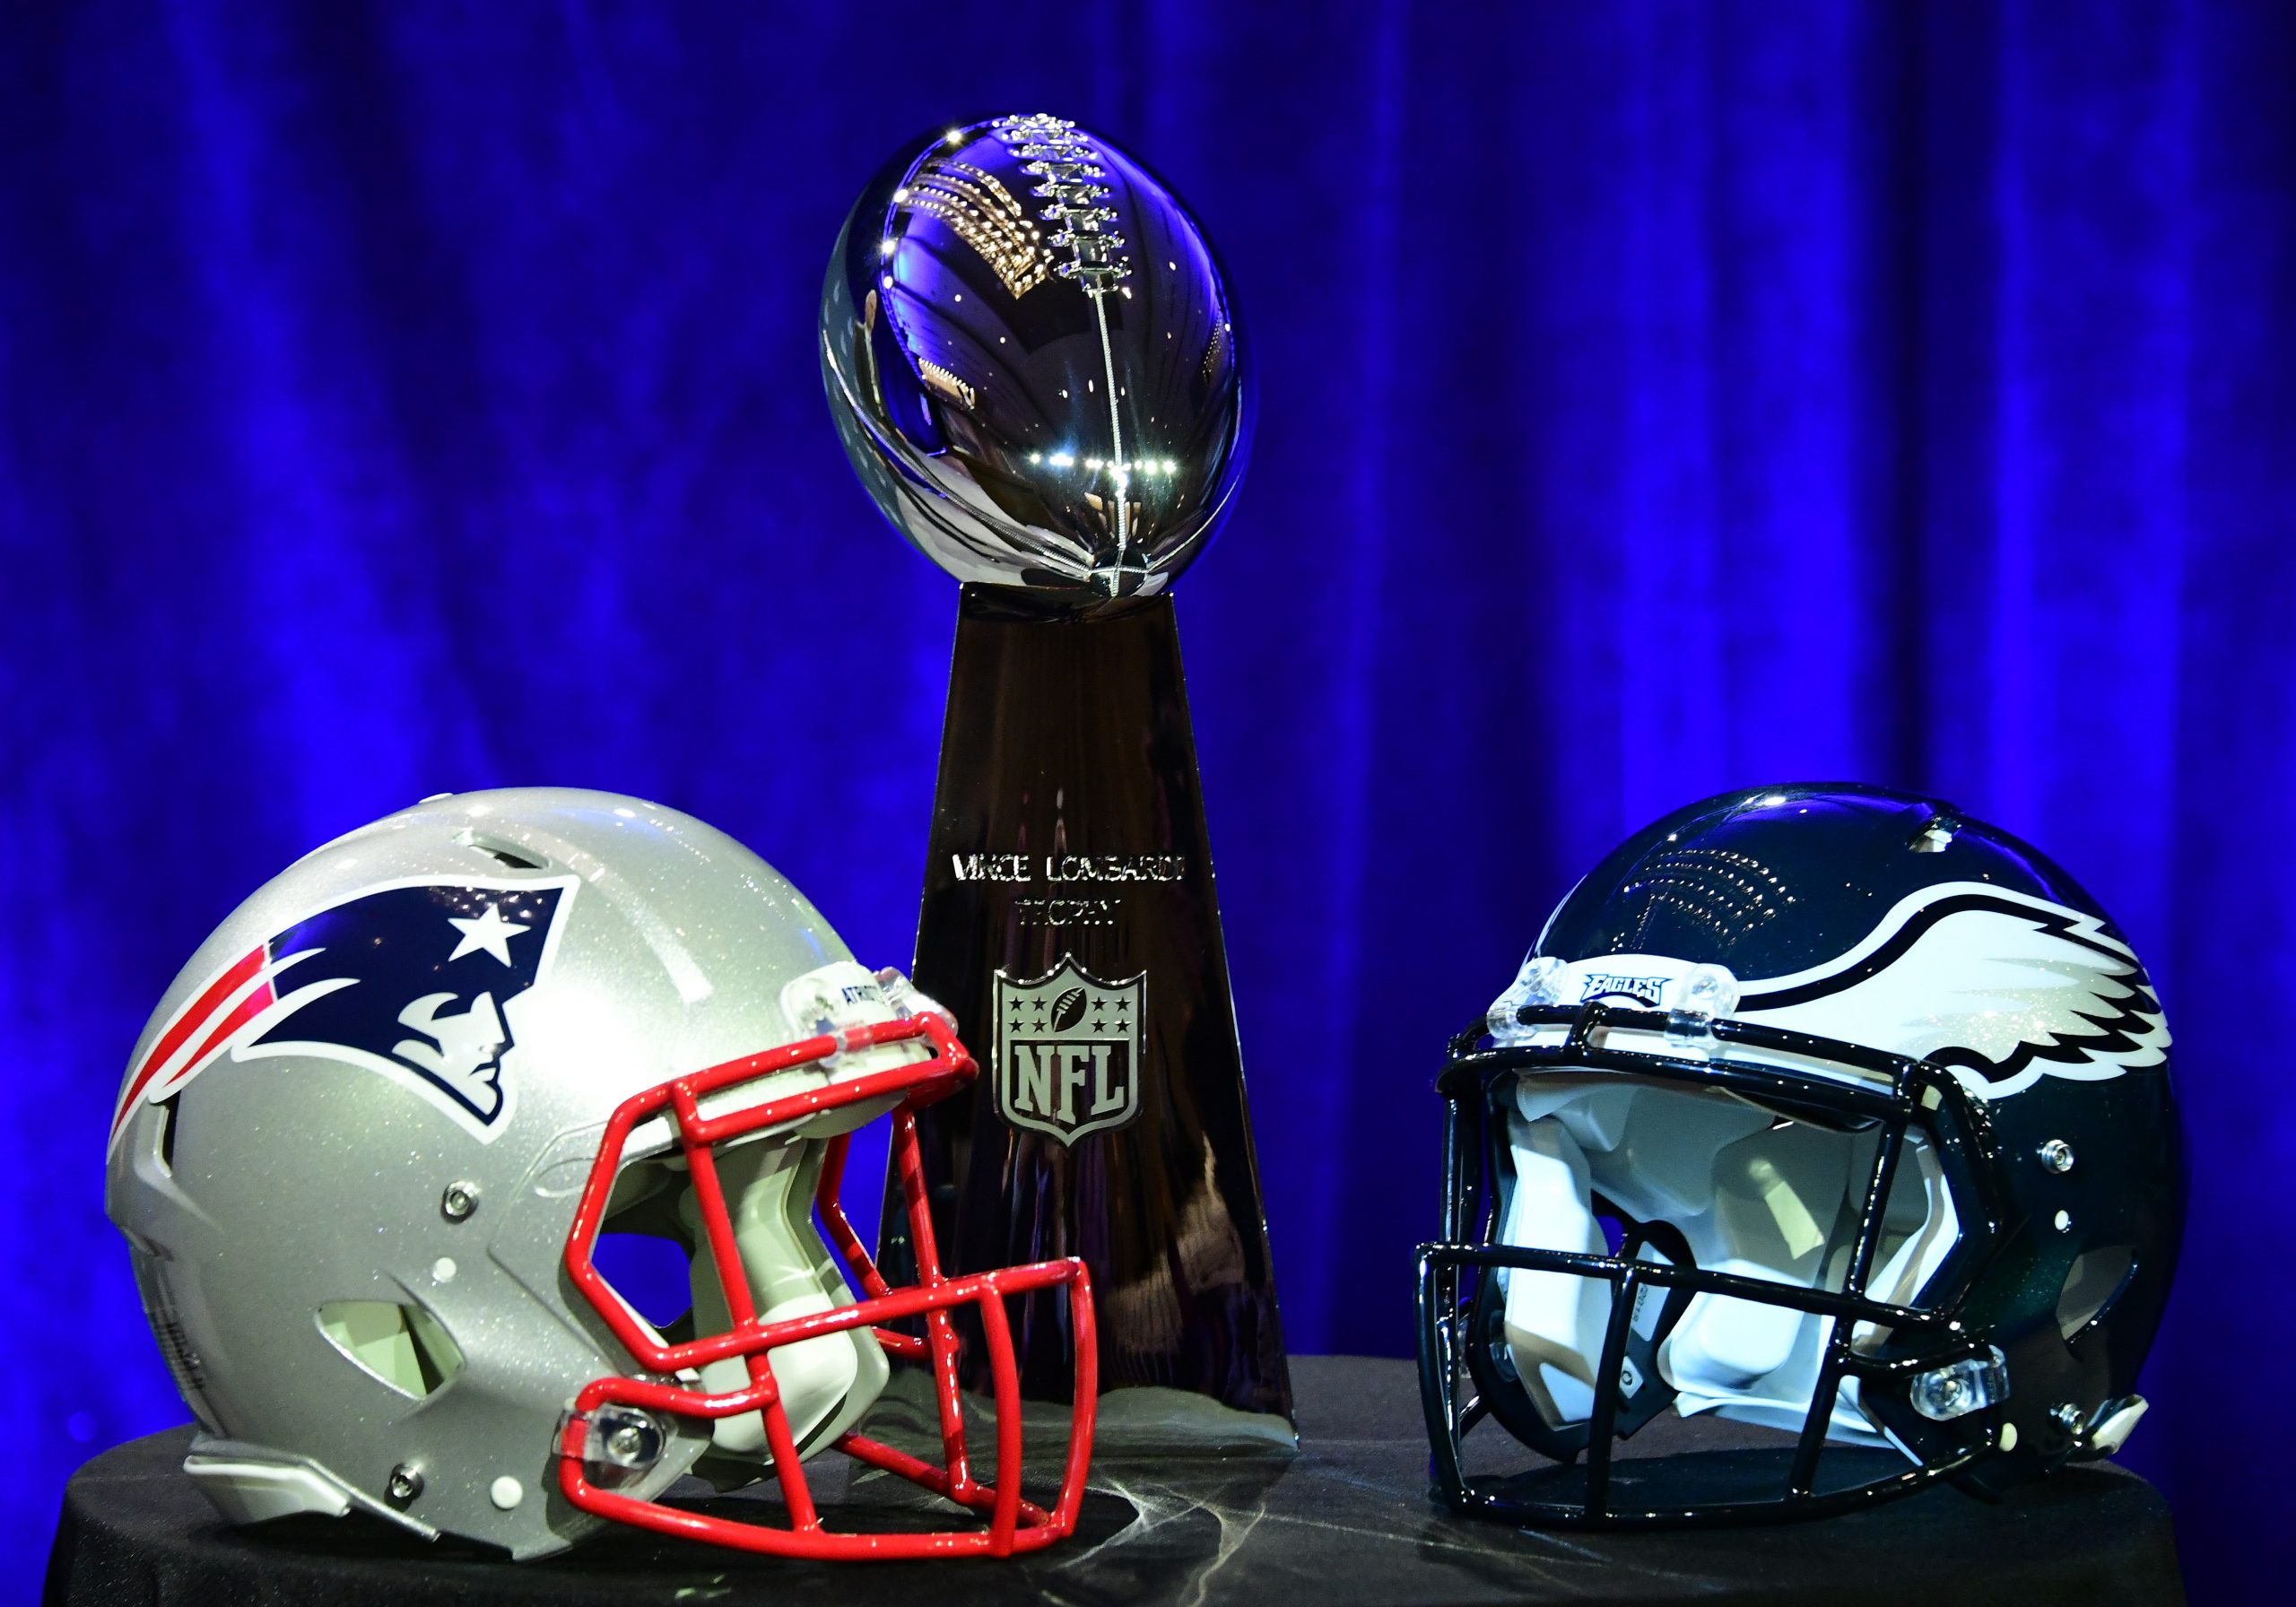 NFL: Super Bowl LII-Commissioner Roger Goodell Press Conference